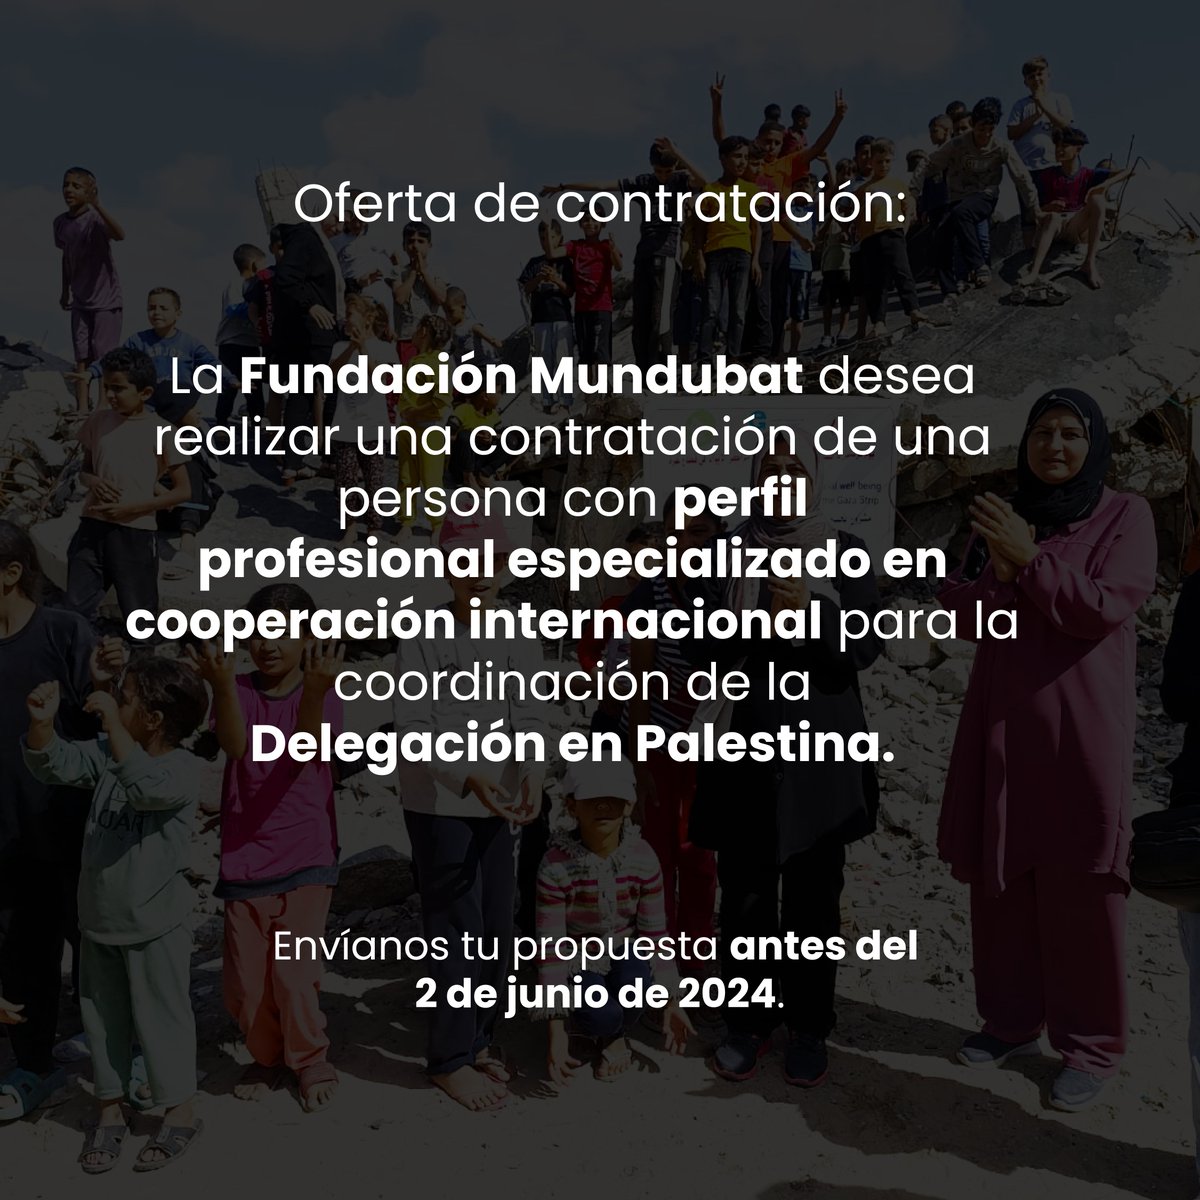 OFERTA DE TRABAJO💼| Mundubat busca contratar a una persona con perfil profesional especializado en cooperación internacional para la coordinación de la Delegación en Palestina. ➡️Más información: ow.ly/5jLO50RG1xa